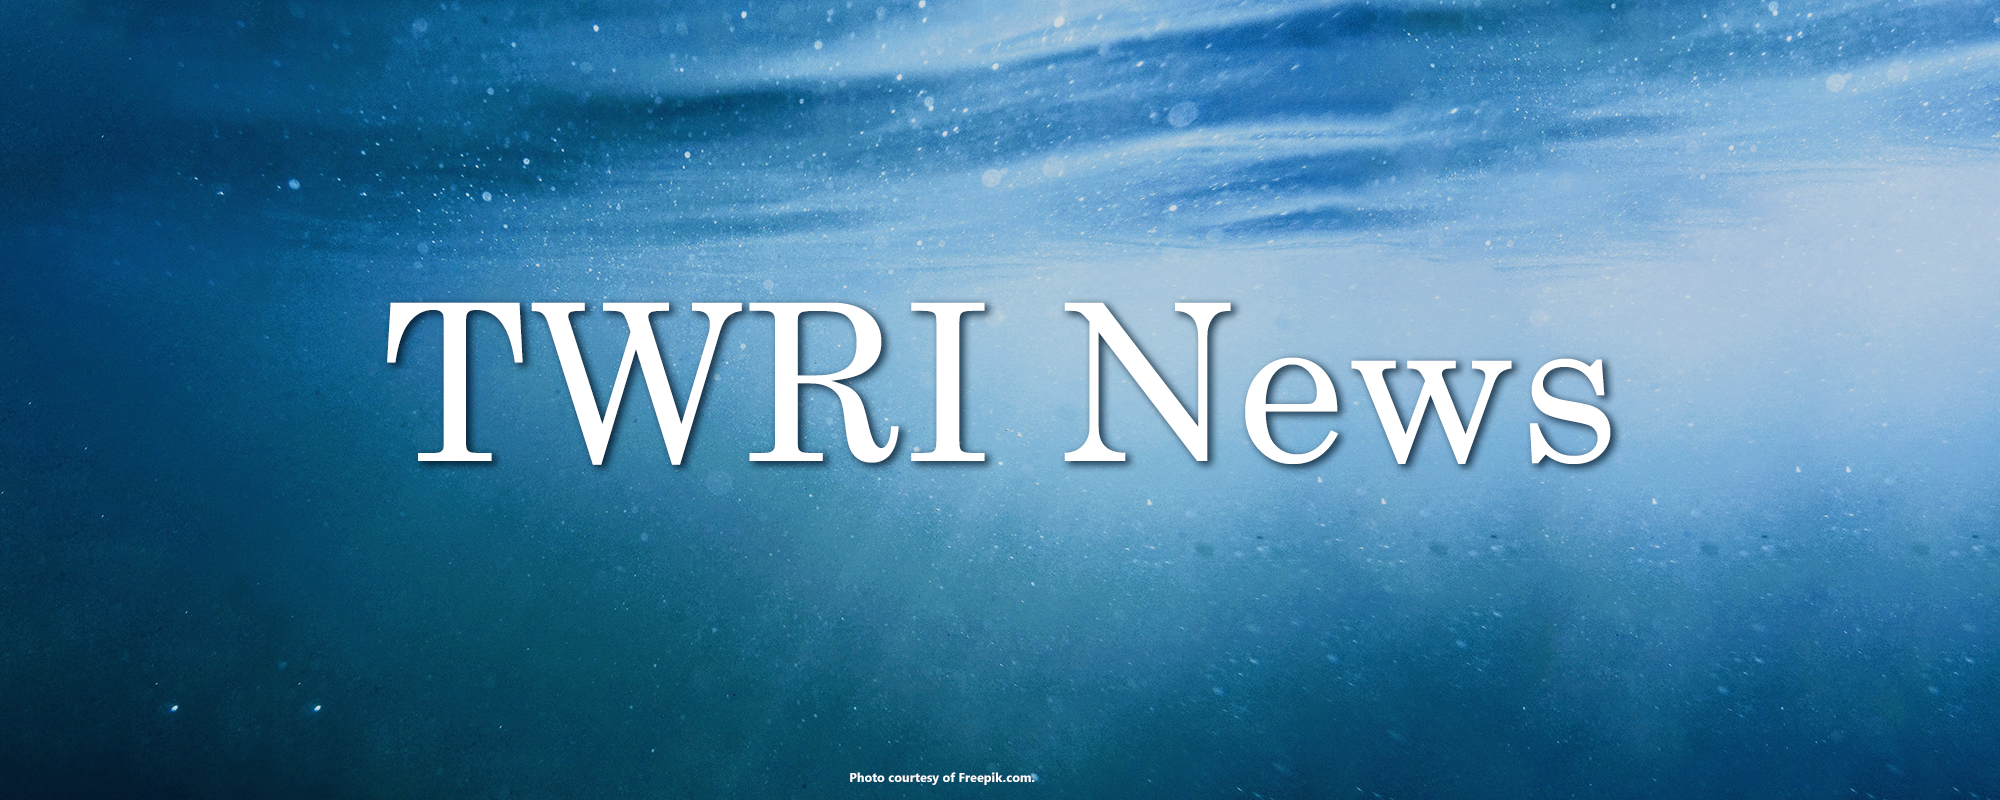 TWRI News